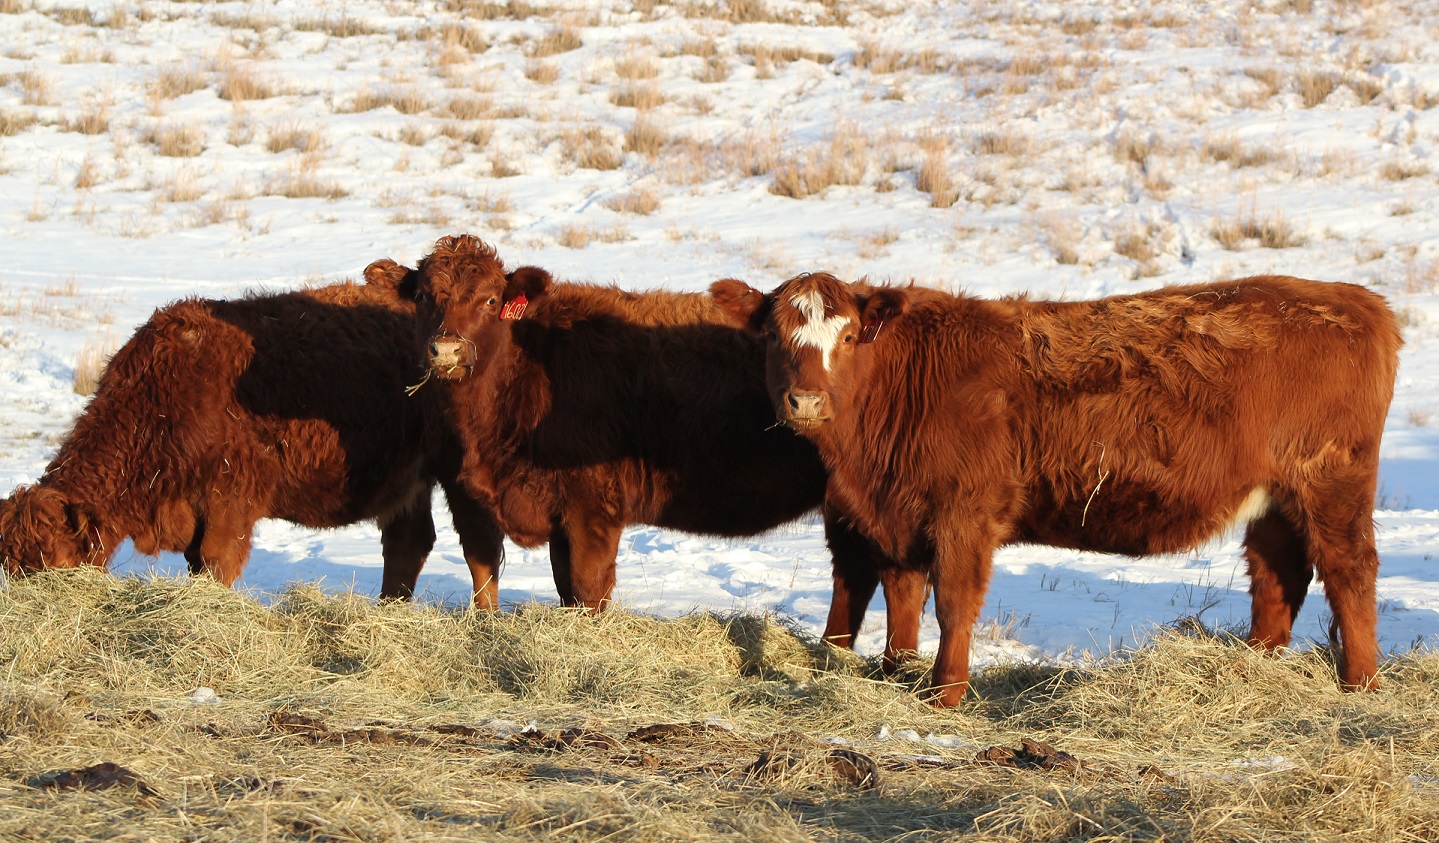 Cows eating hay